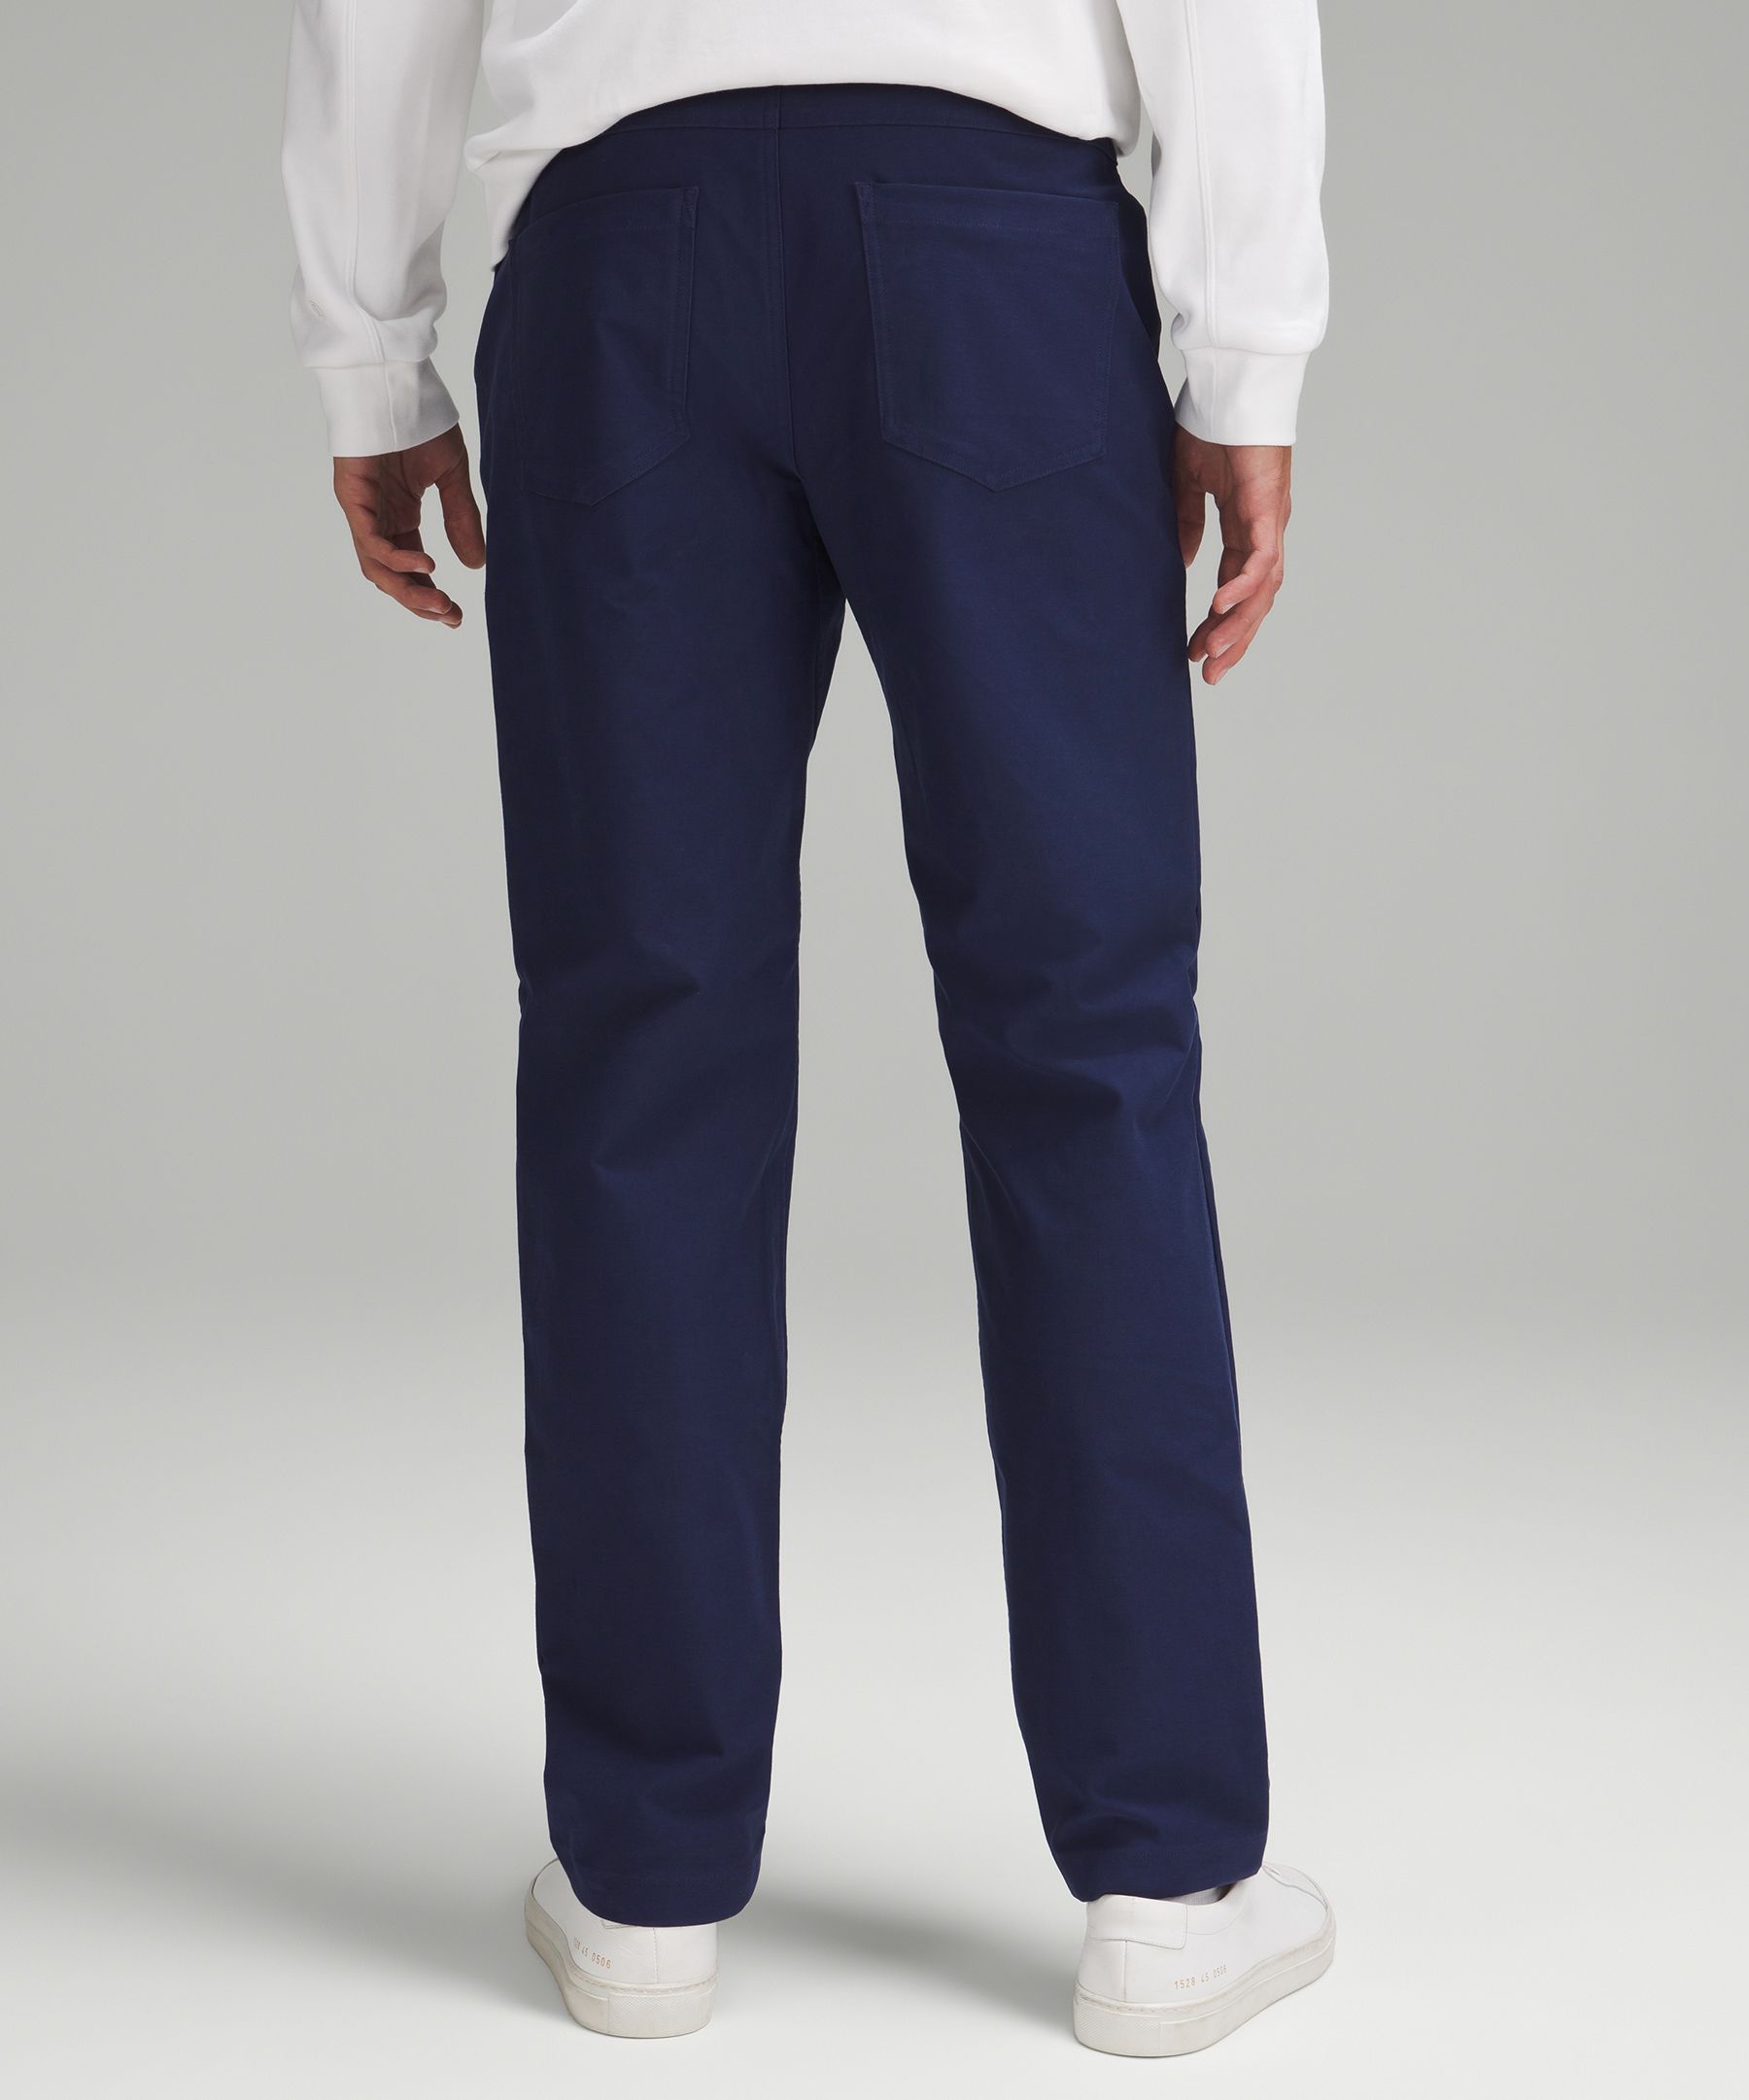 ABC Classic-Fit 5 Pocket Pant 32L *Utilitech, Men's Trousers